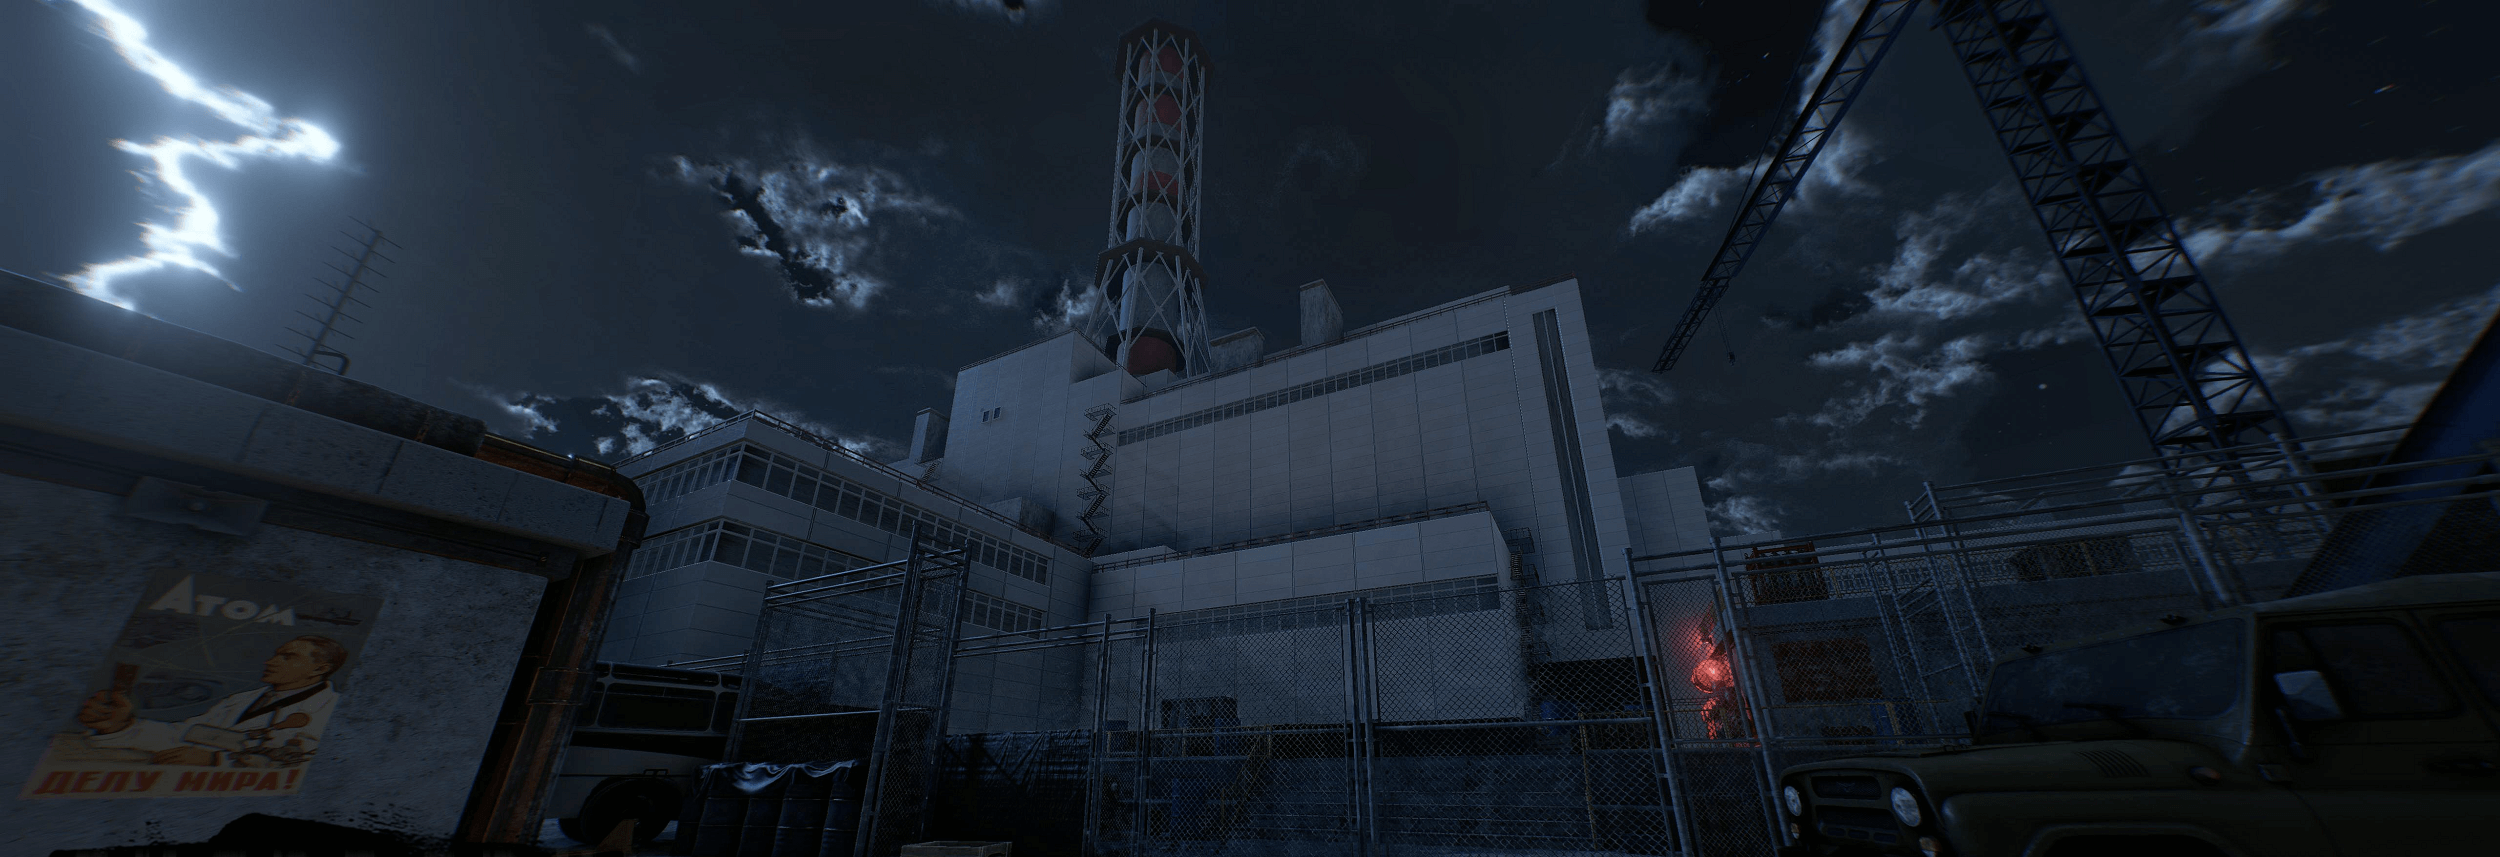 Виртуальная Квест-комната «Чернобыль»